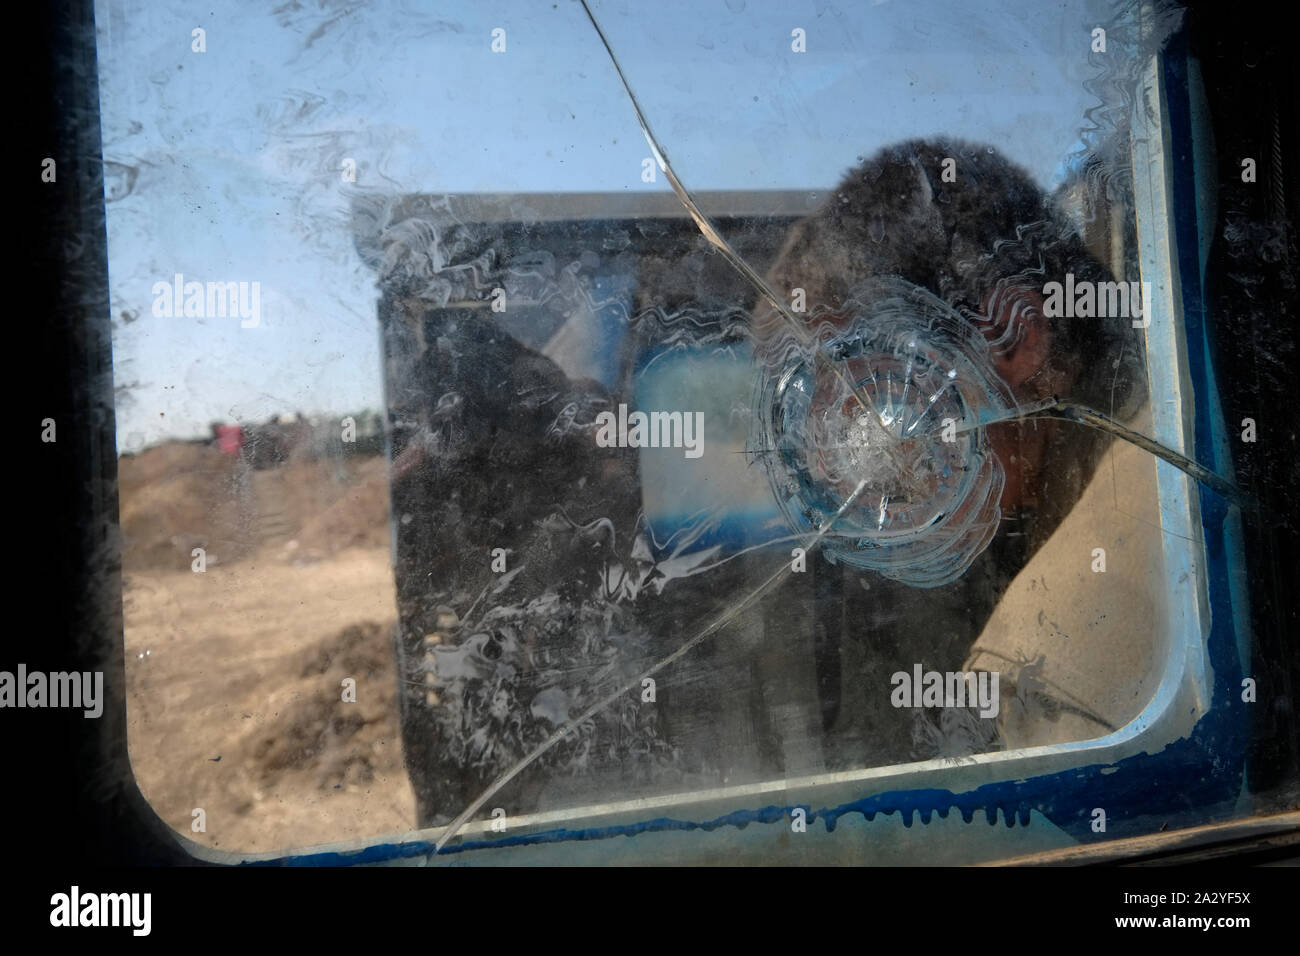 Eine kurdische Kämpfer der People's Defence Forces HPG dem militärischen Flügel der Kurdischen Arbeiterpartei PKK durch ein Fenster eines gepanzerten Fahrzeugs mit einschussloch in der Nähe der Stadt Kirkuk im Nordirak durchsetzt ist zu sehen ist Stockfoto